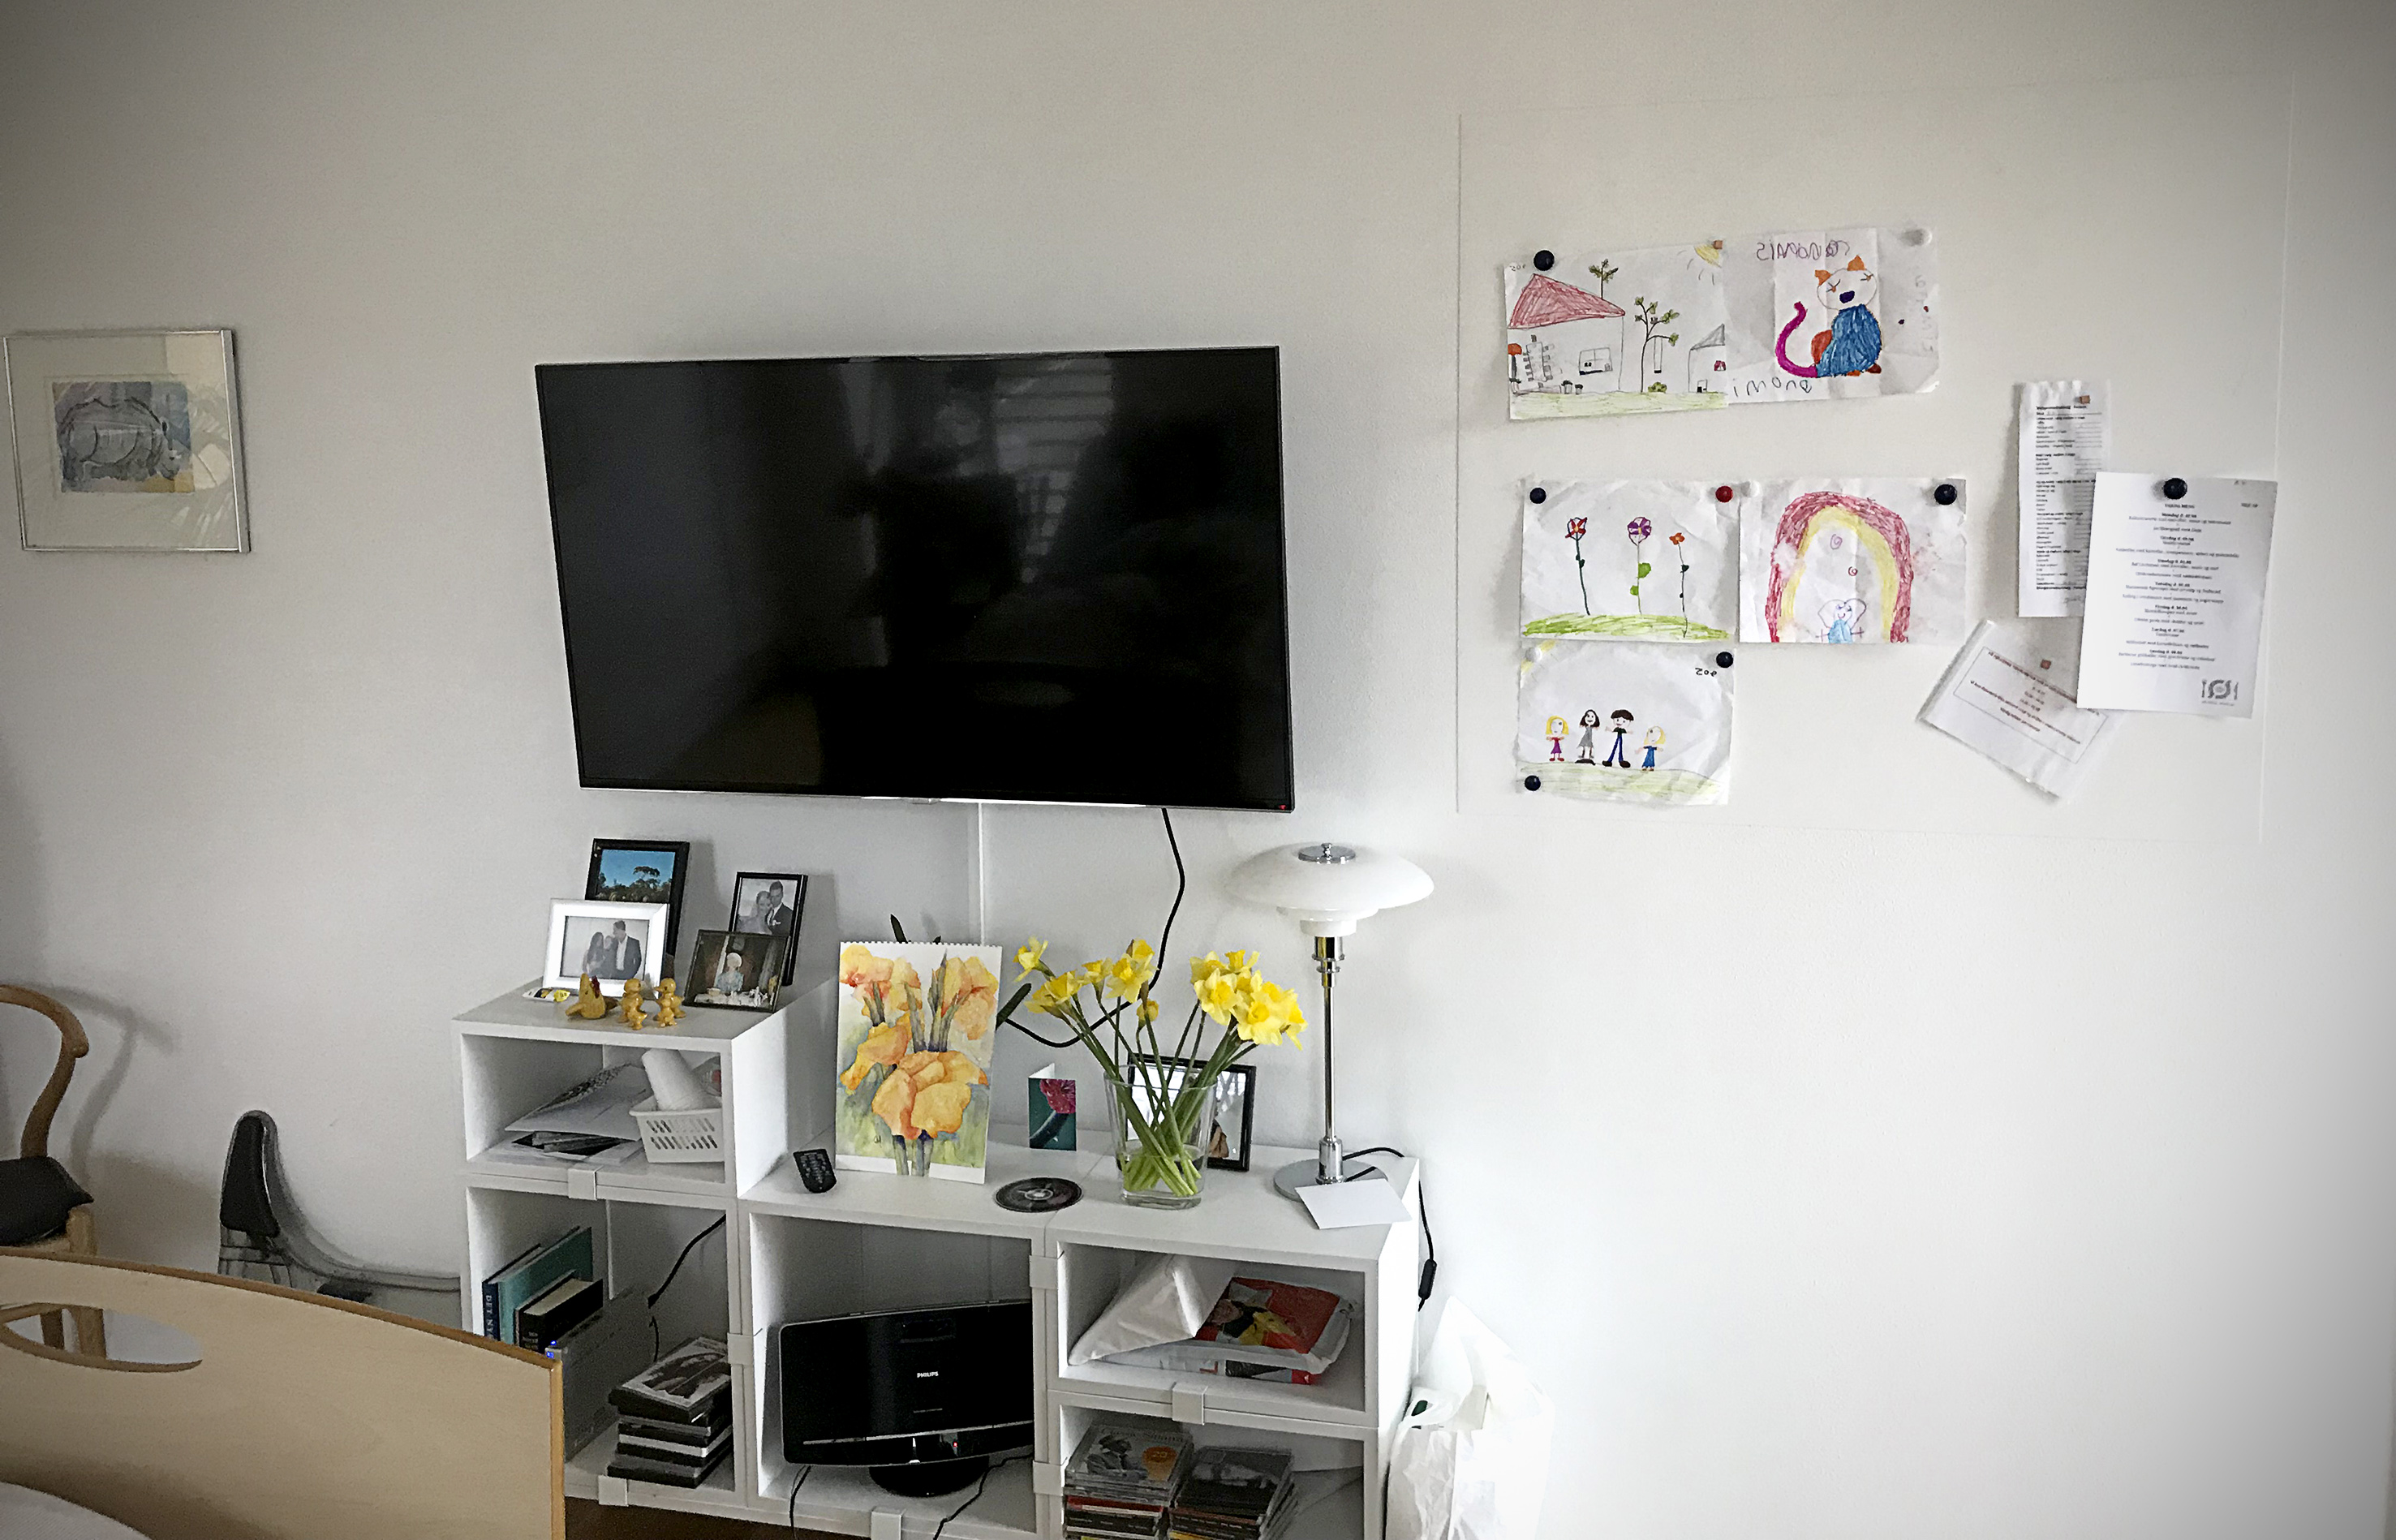 Billedet viser en væg med et fjernsyn og børnetegninger hængt op ved siden af.